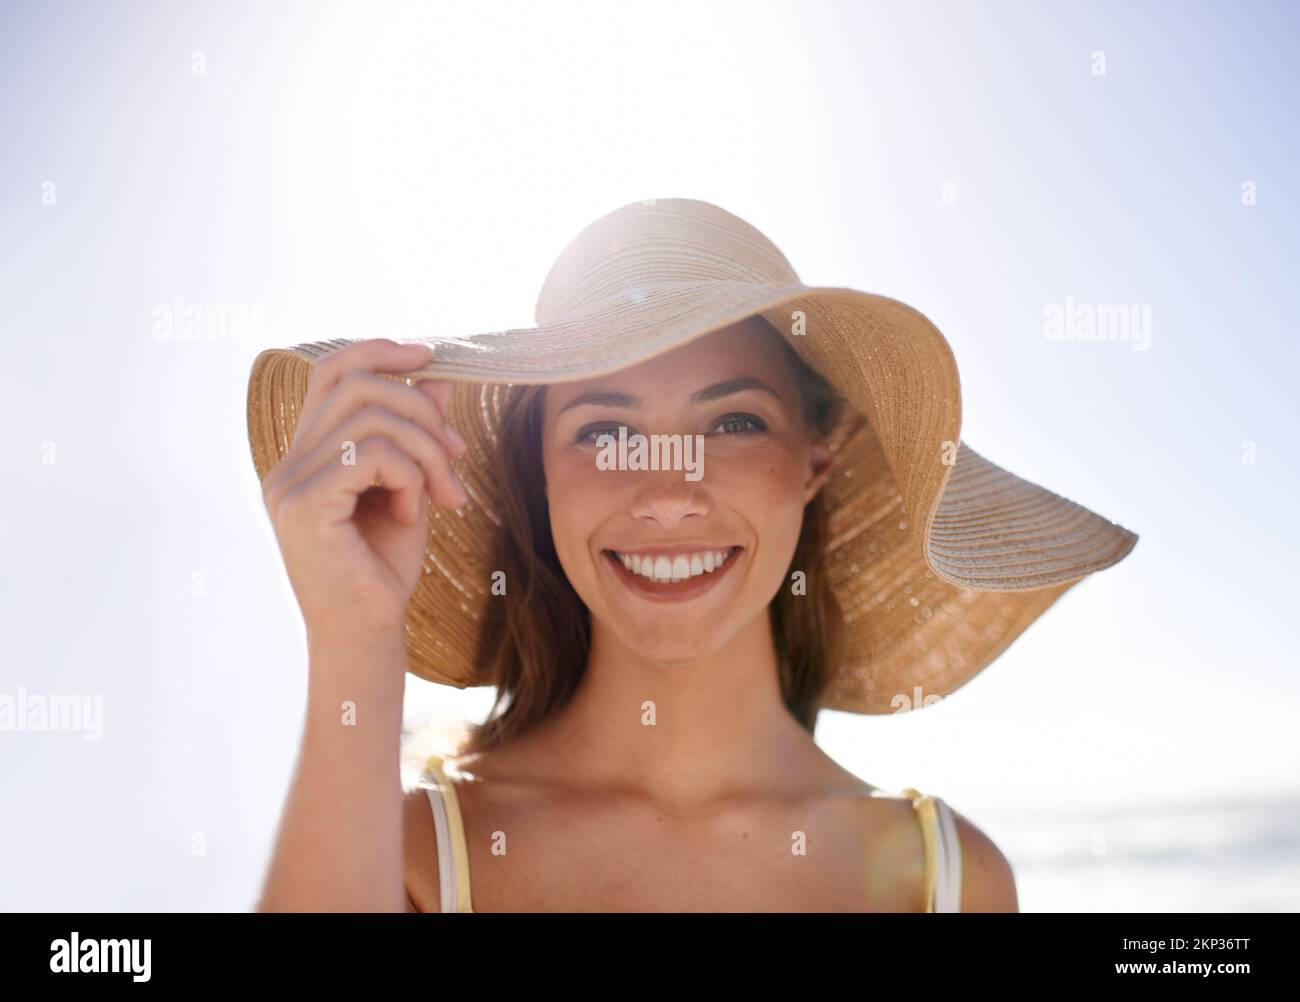 Sie fühlt sich sommerlich in ihrem Sonnenhut. Eine junge Frau mit Sonnenhut am Strand. Stockfoto